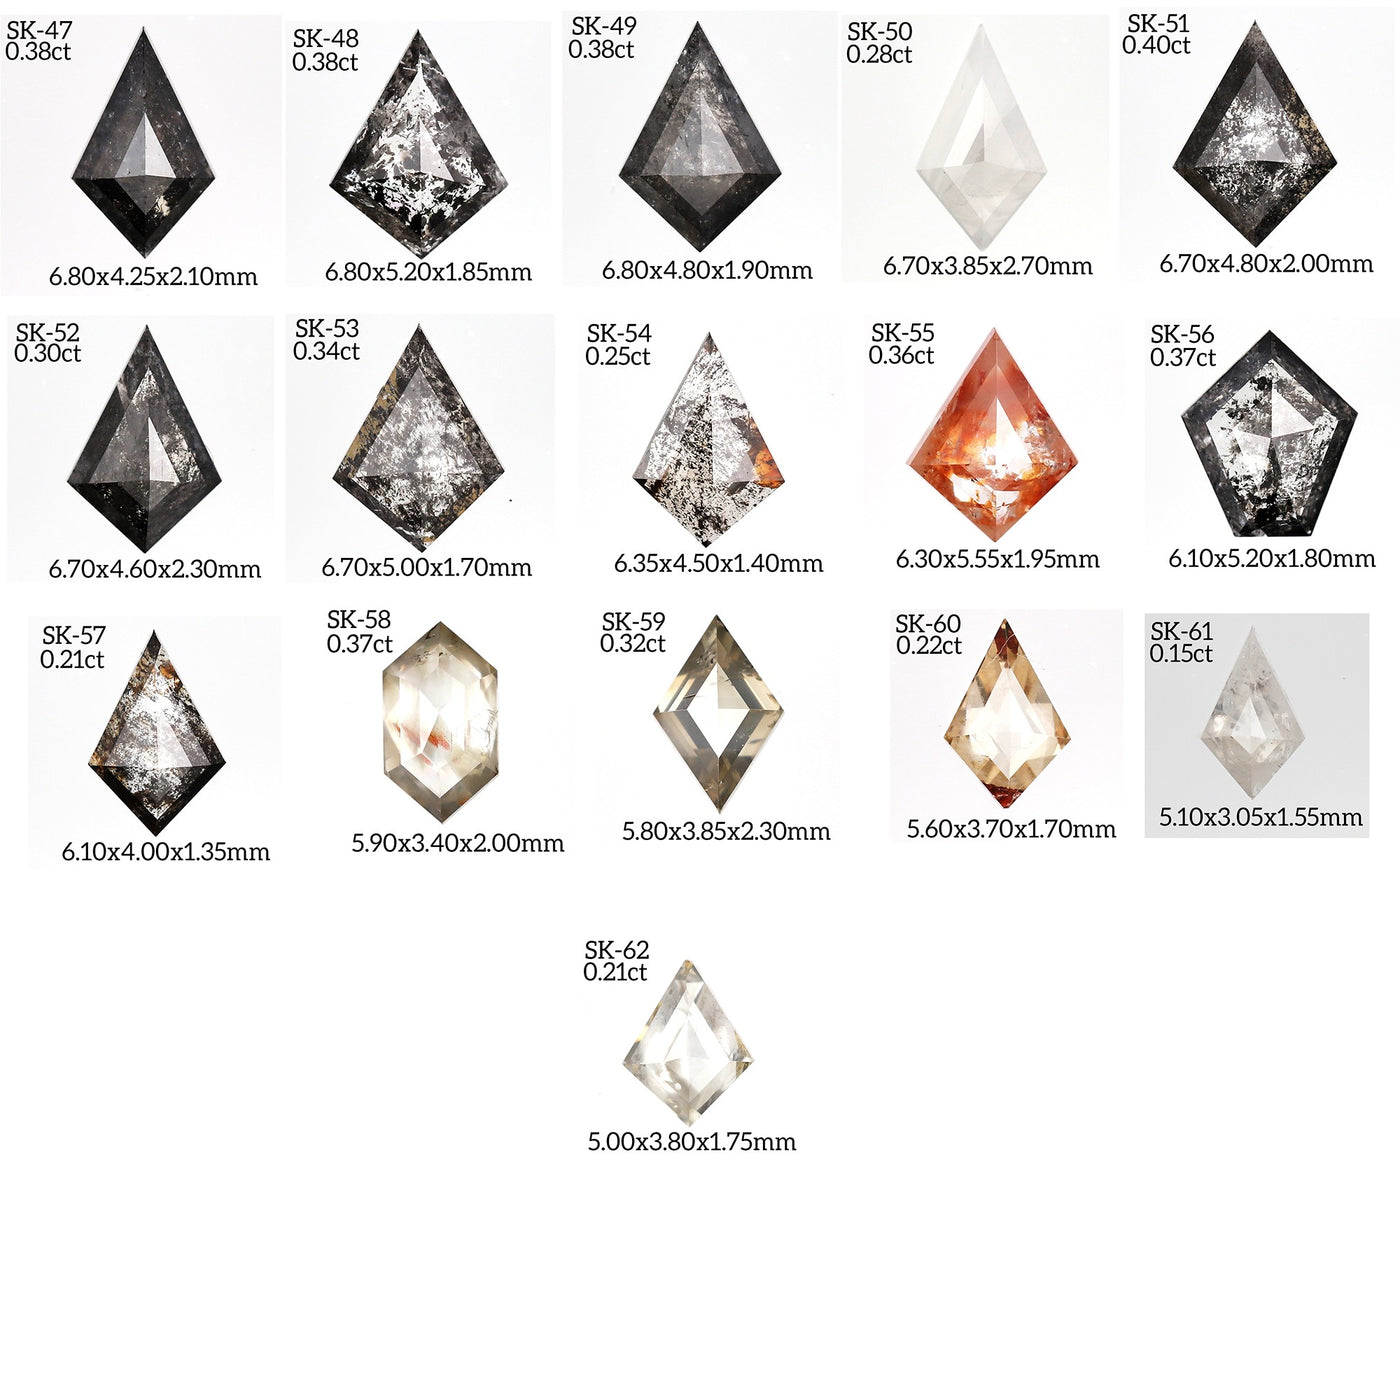 Salt and Pepper kite diamond Ring | Engagement Ring | kite diamond ring